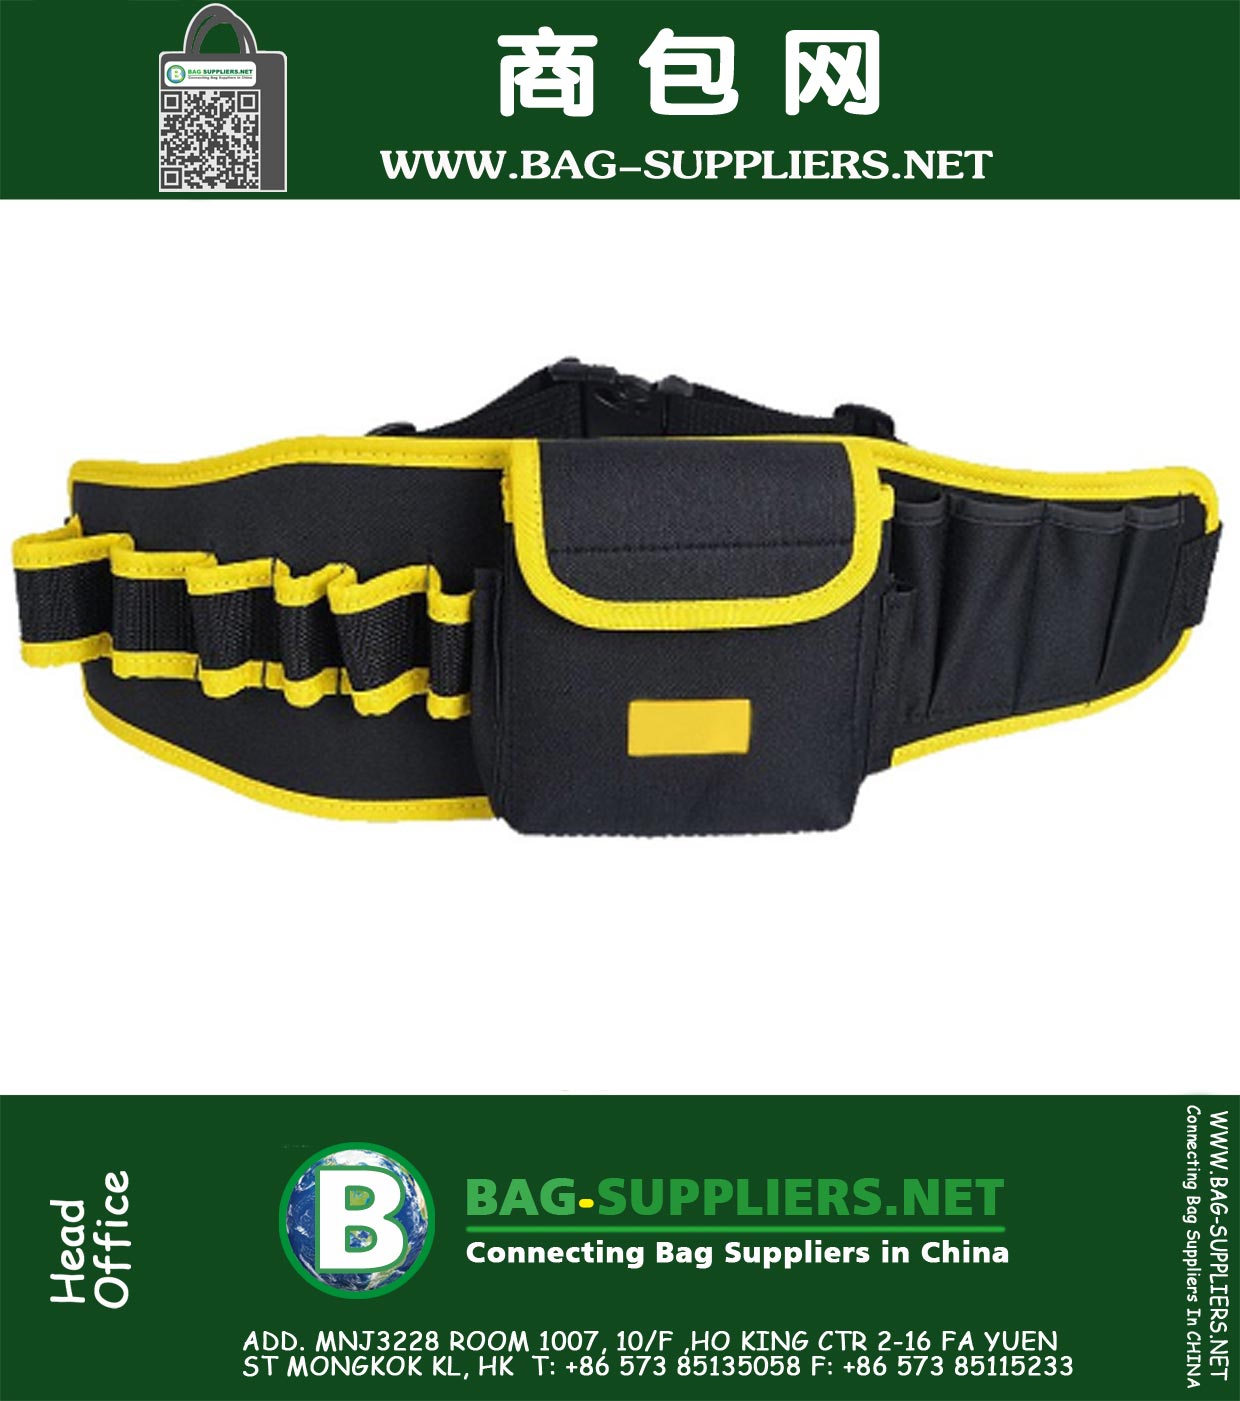 14 En 1 a prueba de agua bolsa de herramientas Cinturón de herramientas del electricista Tela Oxford Saddlebag Caso ayuda de la cintura ajustable